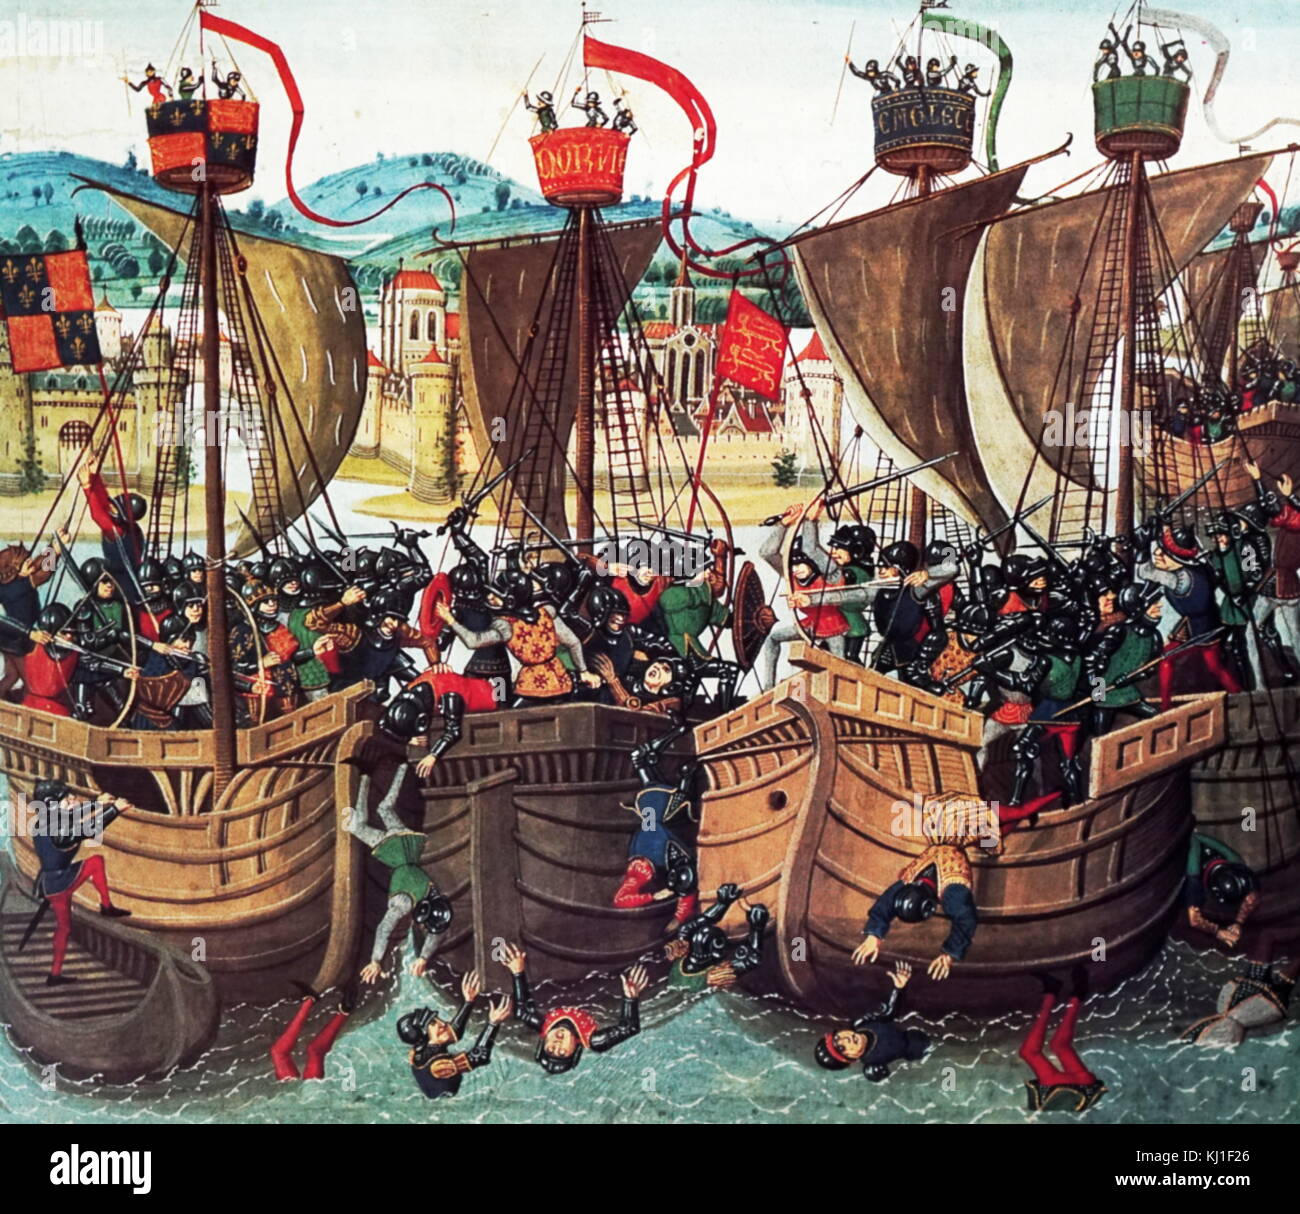 Bataille de Sluys, également appelée bataille de l'Ecluse, bataille de la mer ; 24 juin 1340. L'un des conflits d'ouverture de la guerre de Cent Ans entre la France et l'Angleterre. miniature de la bataille de Jean Froissart, Chroniques du 15e siècle Banque D'Images